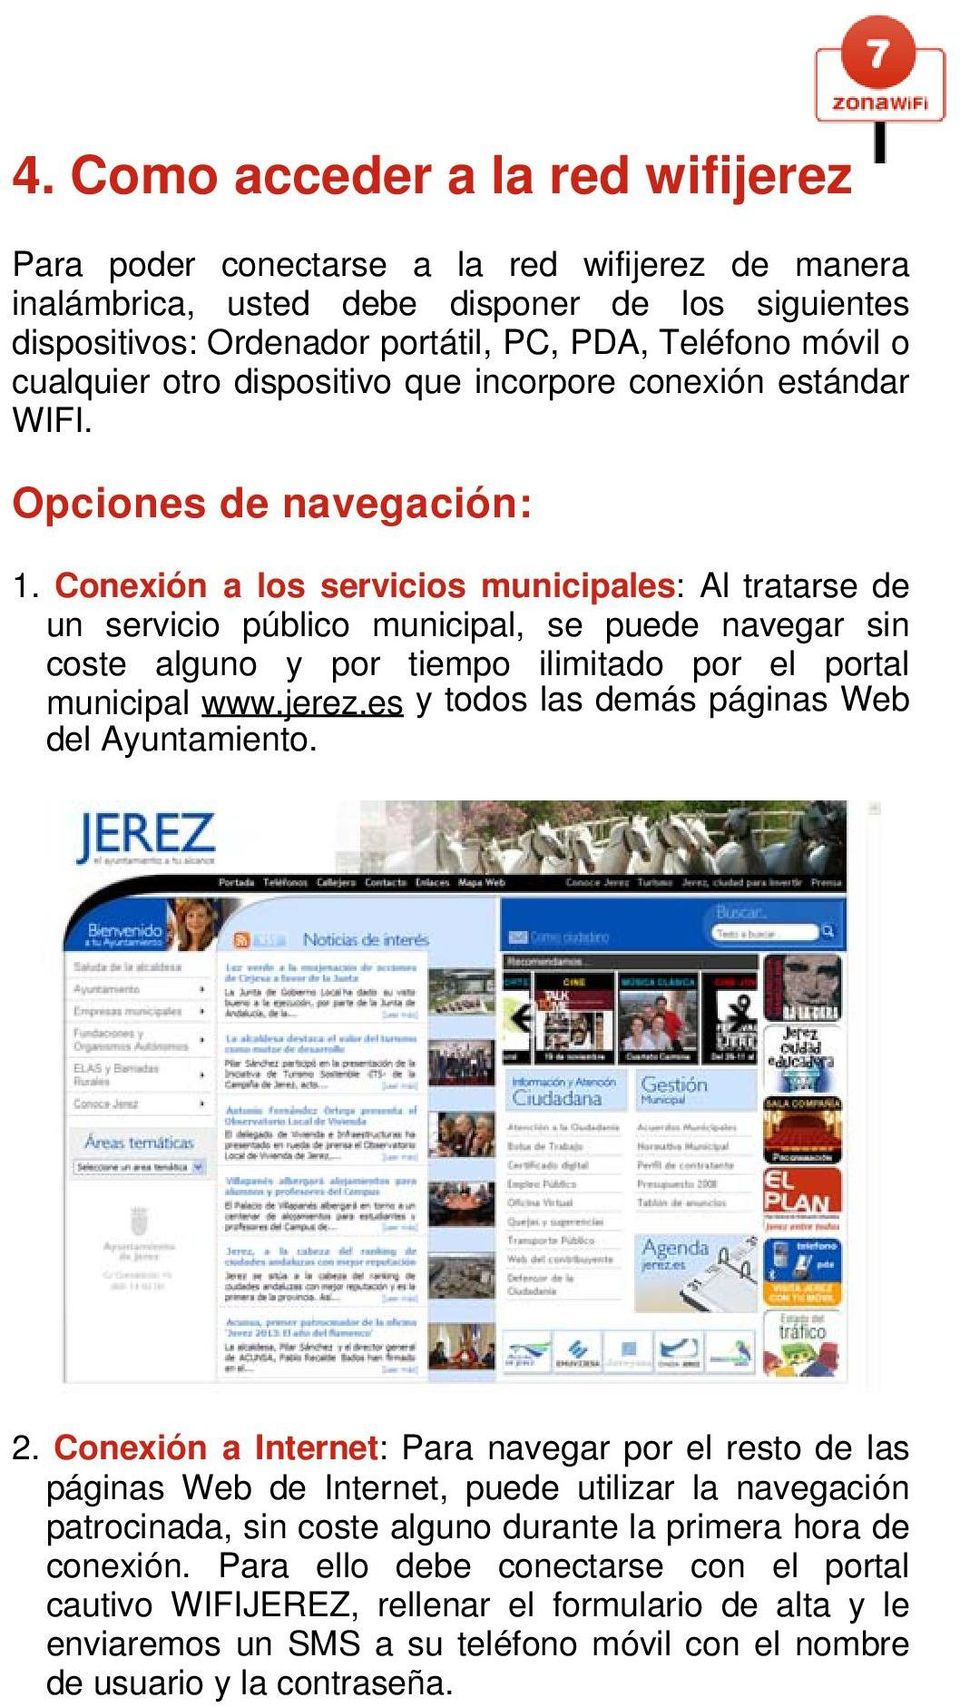 Conexión a los servicios municipales: Al tratarse de un servicio público municipal, se puede navegar sin coste alguno y por tiempo ilimitado por el portal municipal www.jerez.